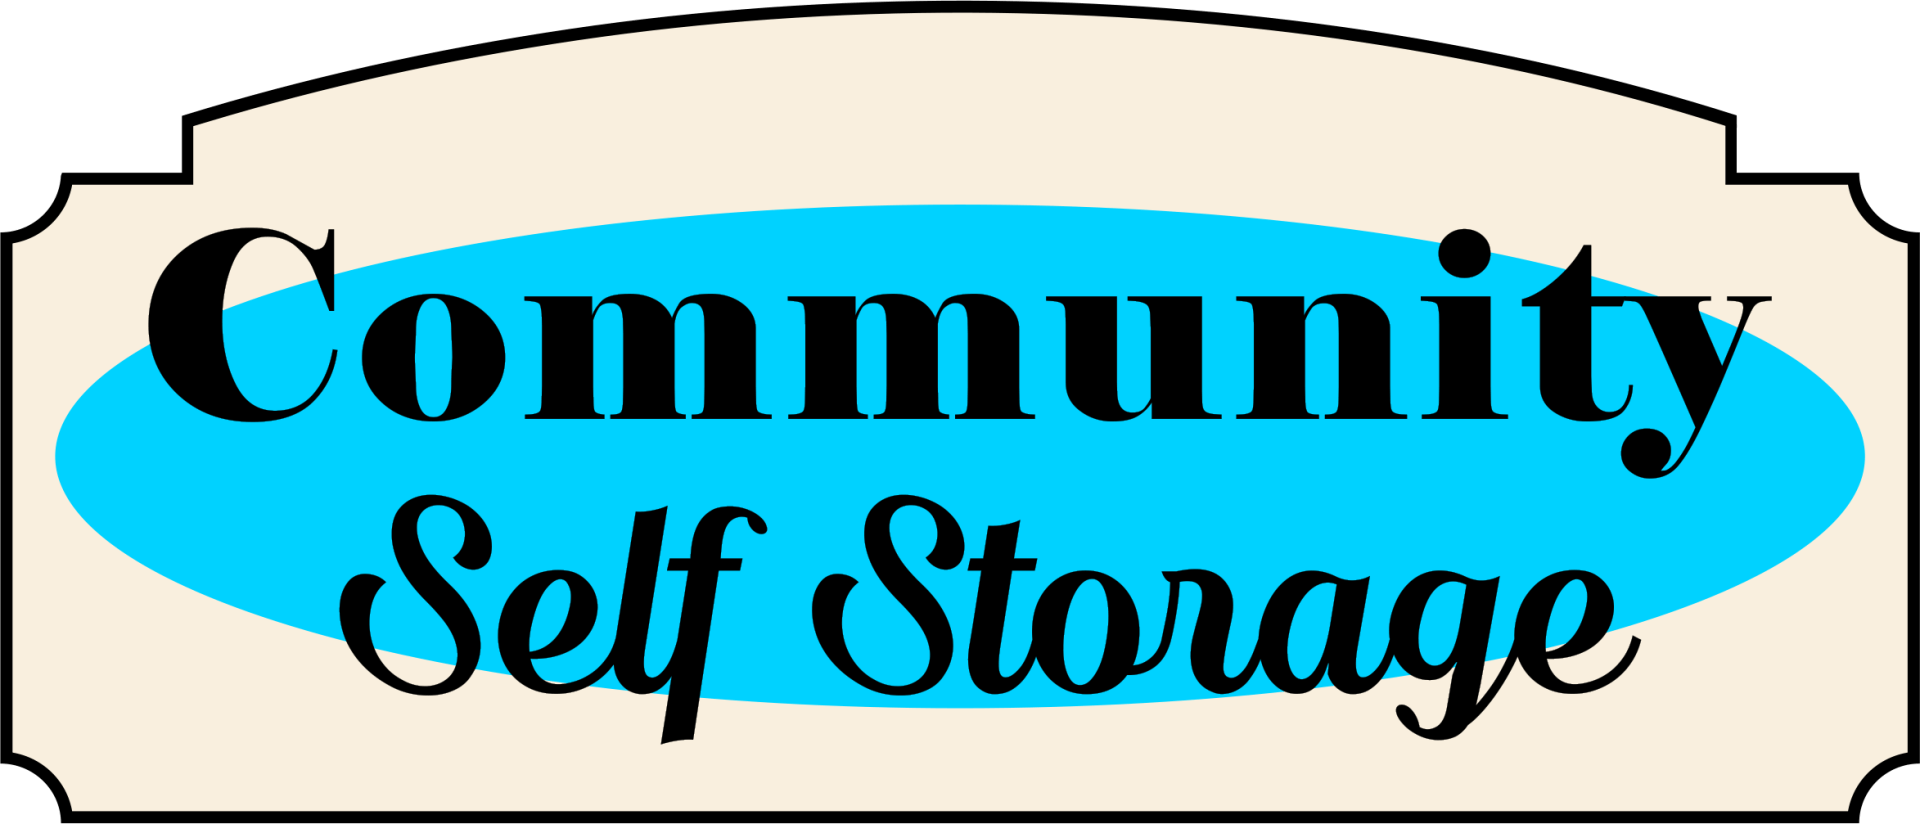 Community Self Storage LOGO